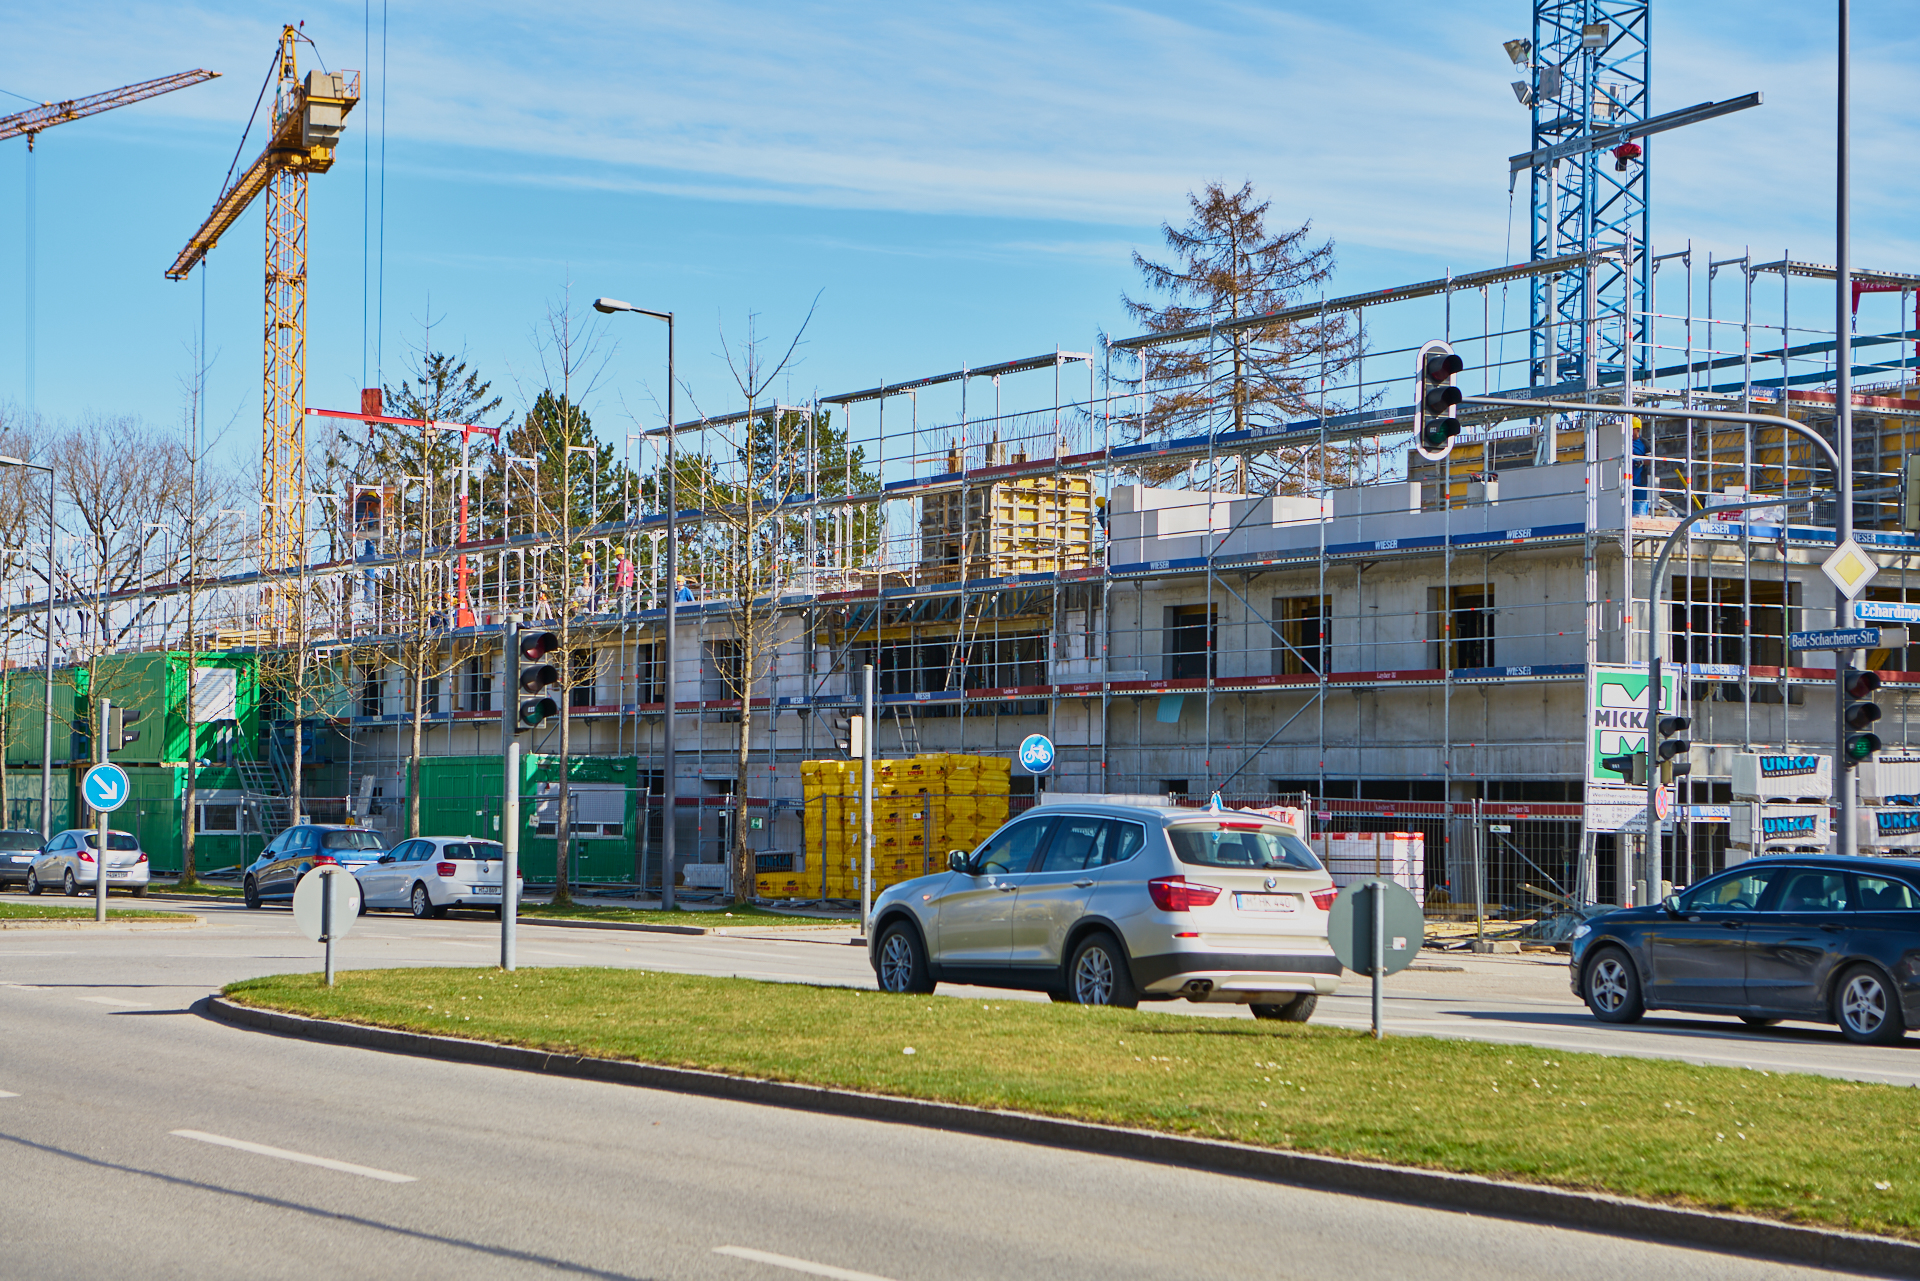 04.04.2018 - Baustelle Maikäfersiedlung in der Bad Schachener Straße in Neuperlach